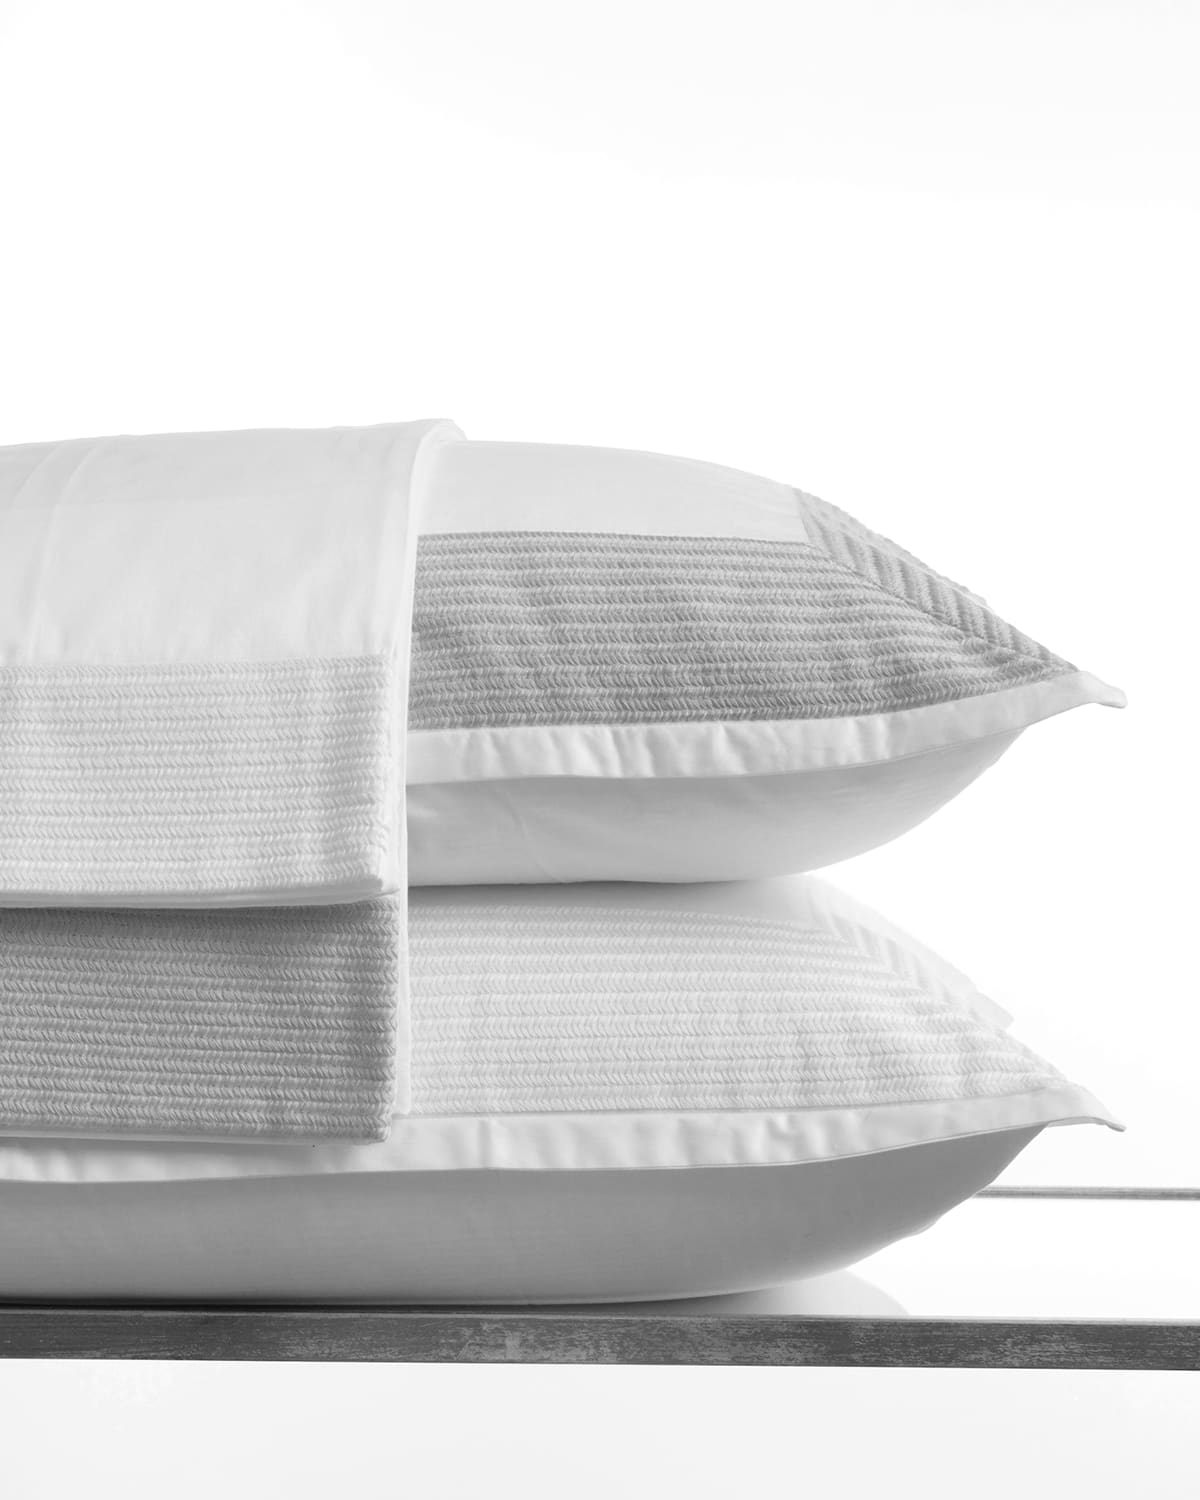 Bovi Fine Linens Herron King Pillowcase, Set Of 2 In White